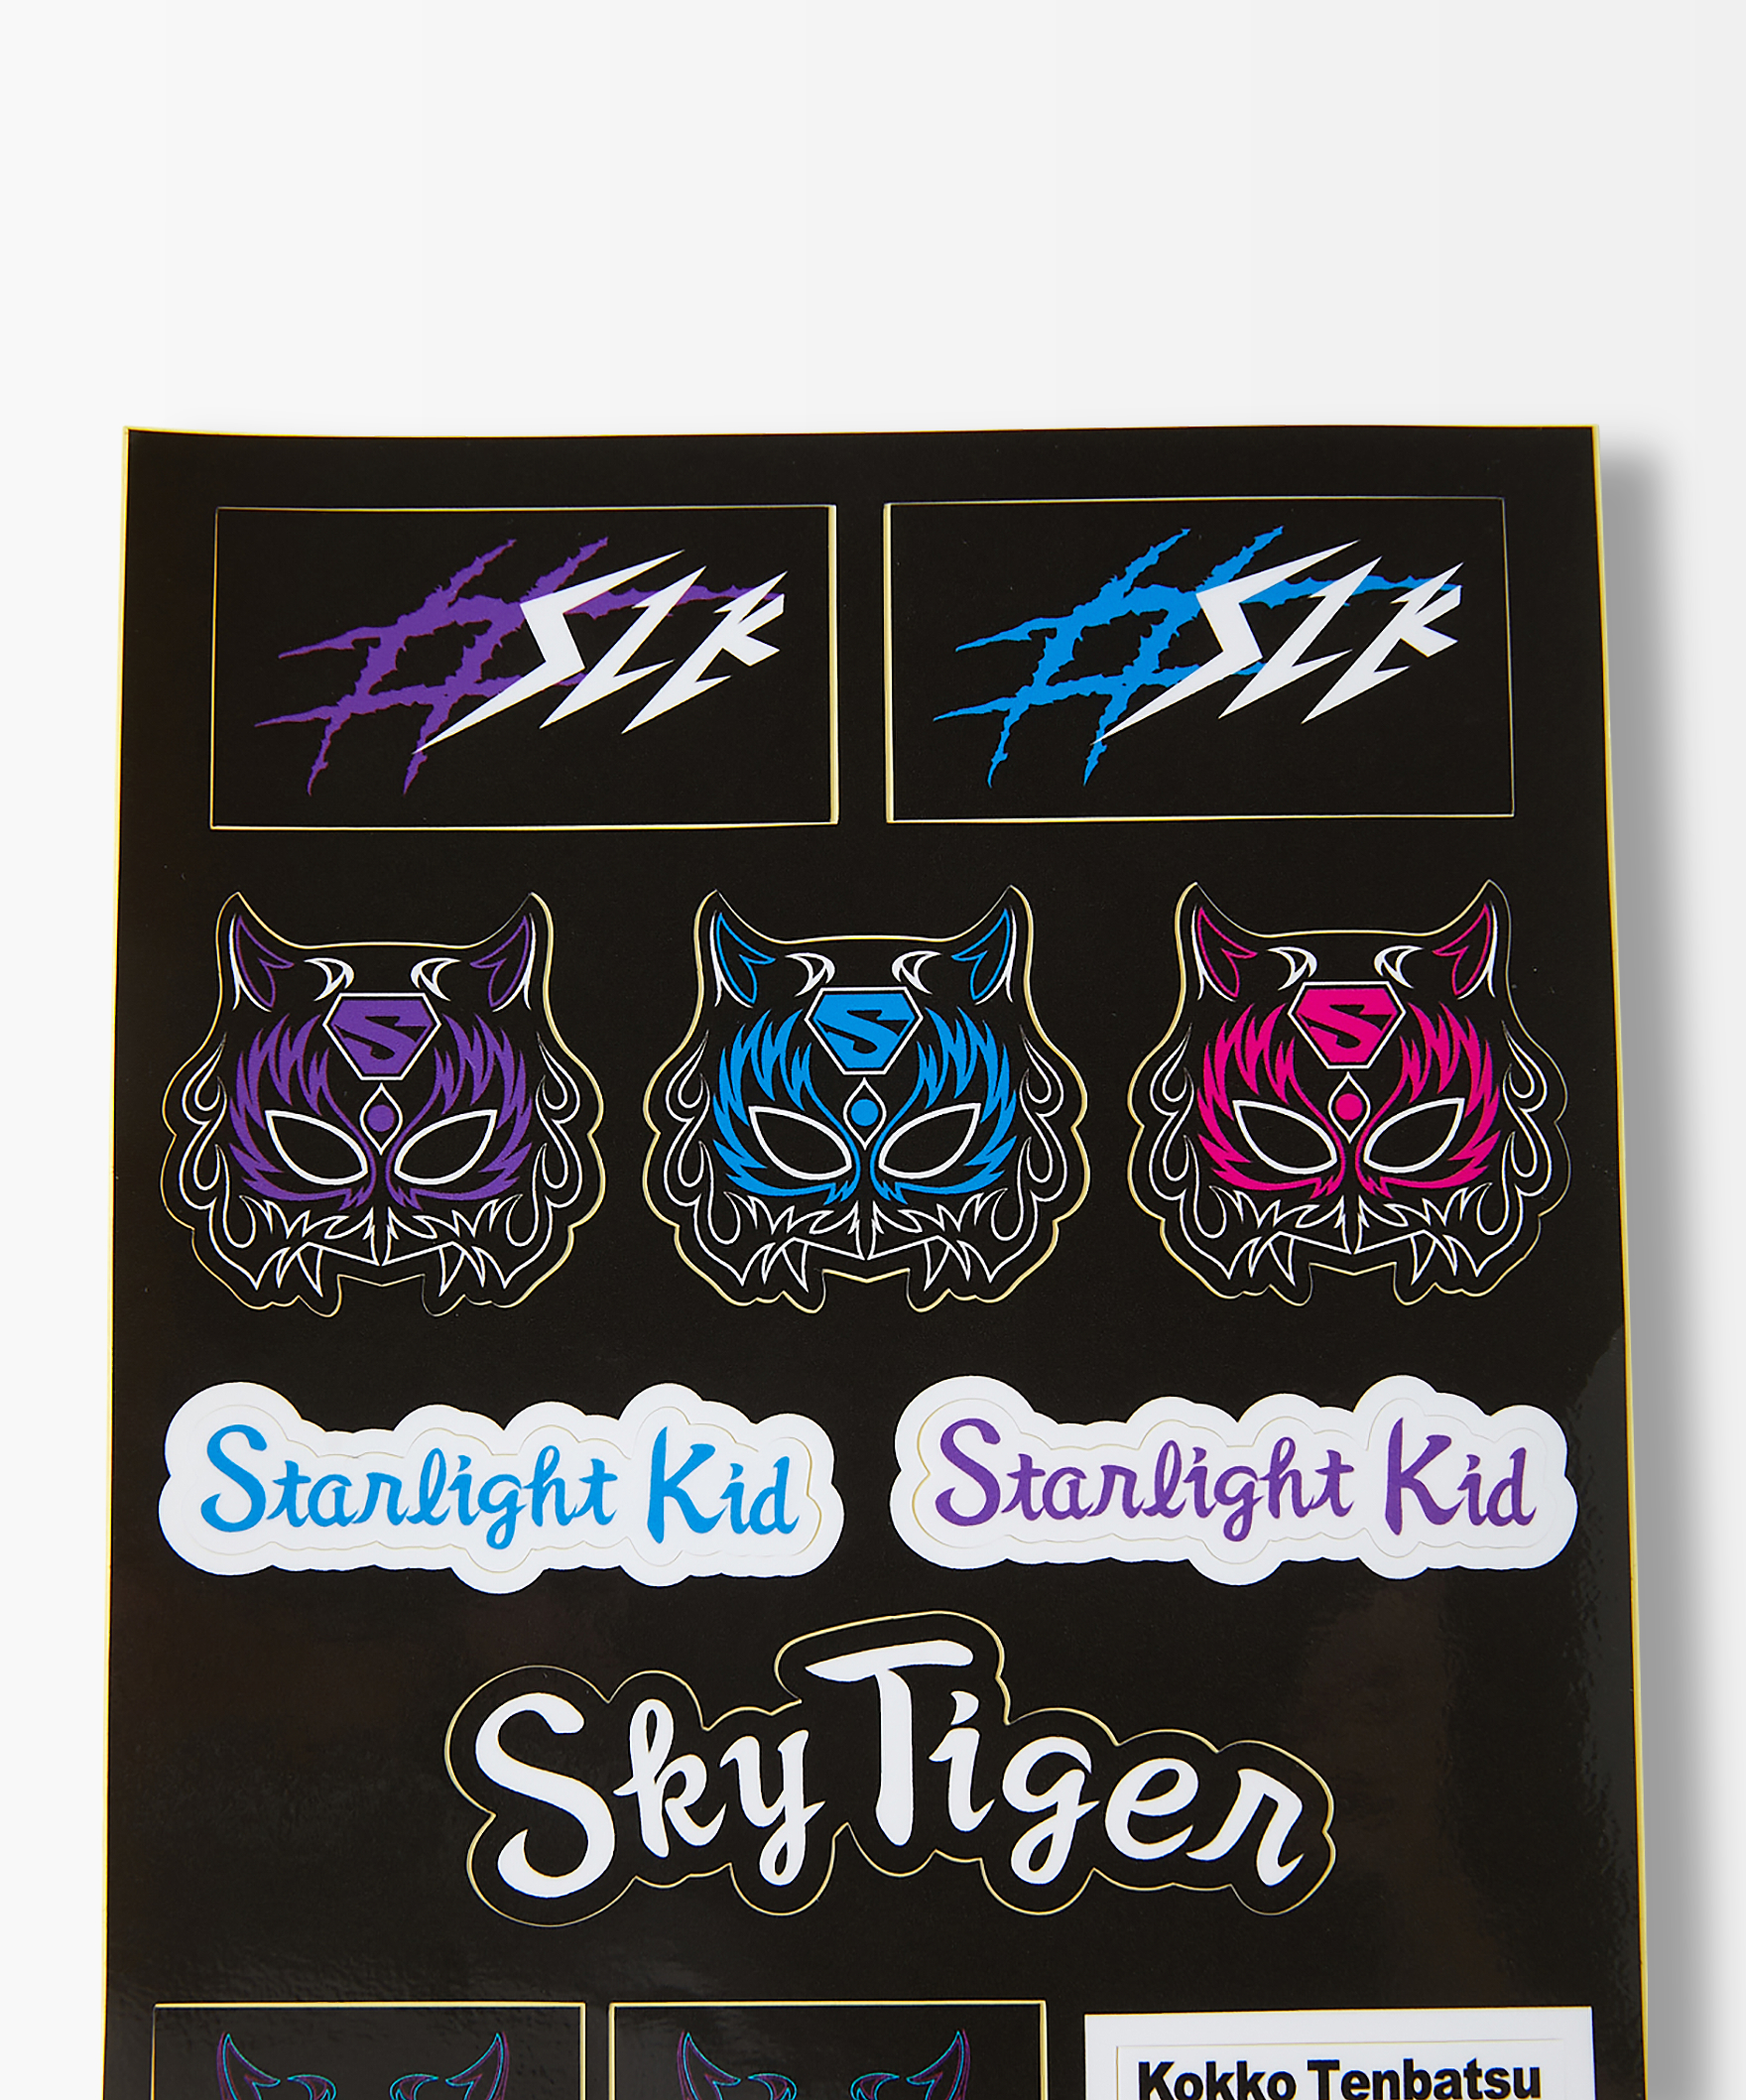 SLK Design Sticker